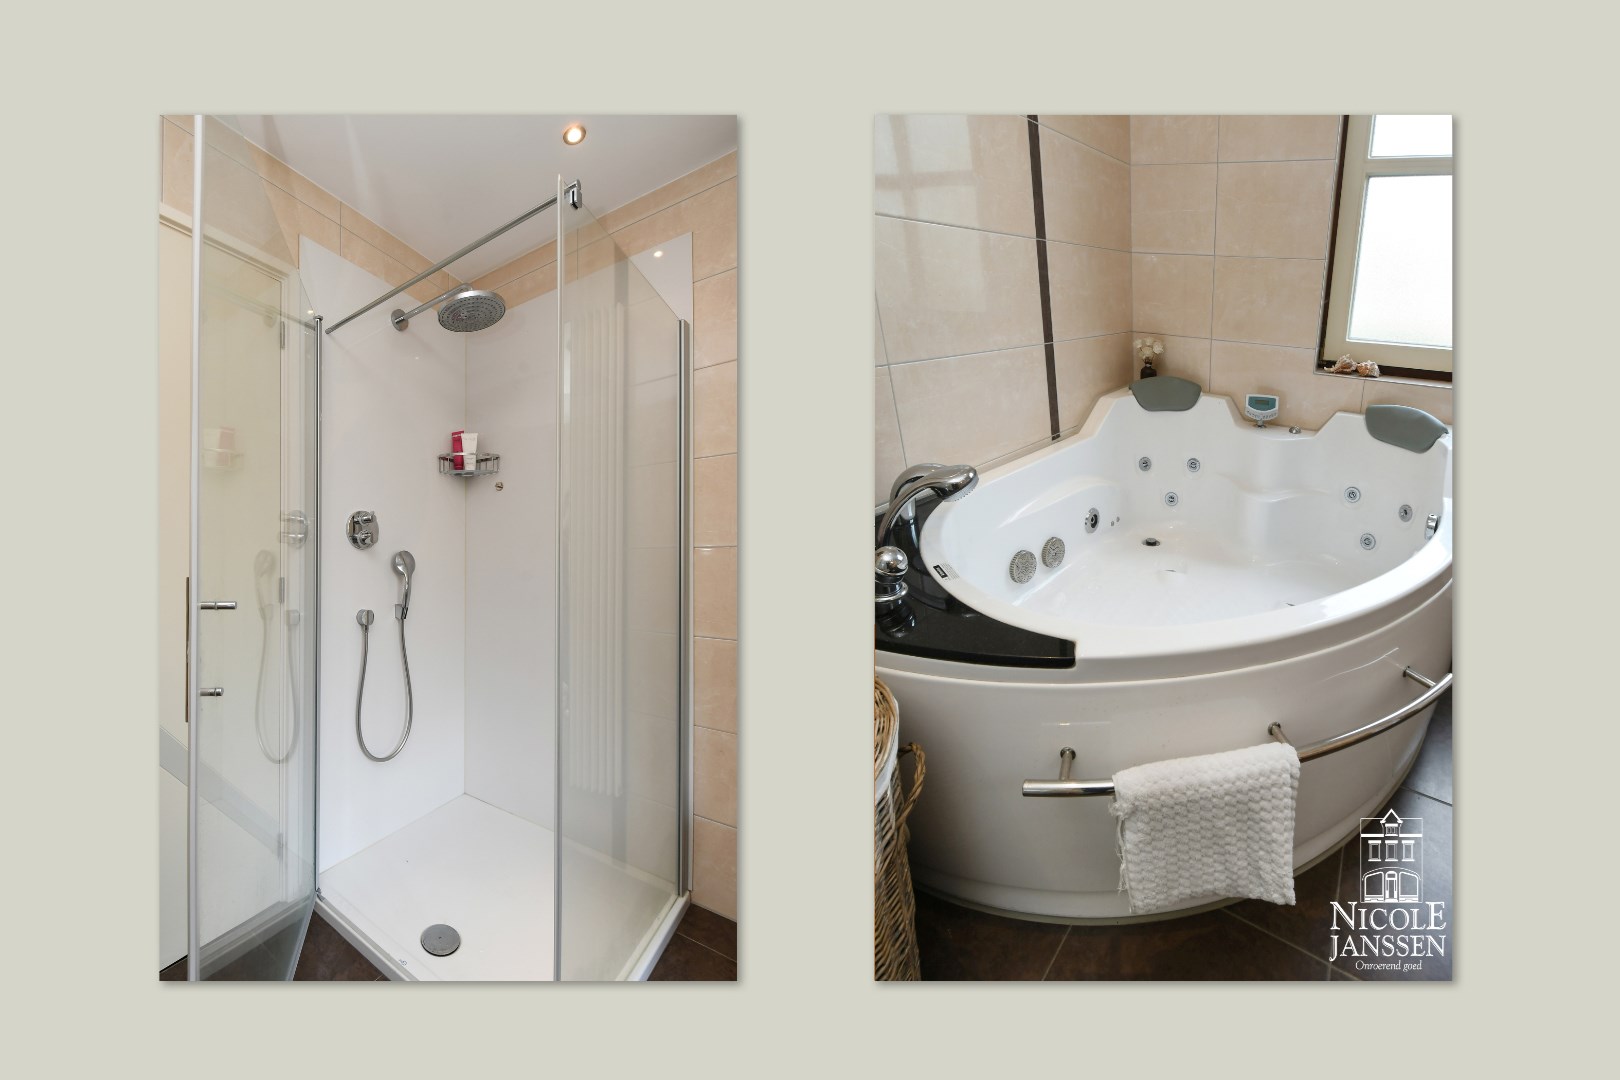 Badkamer met grote whirlpool/hoekbad en vernieuwde douche